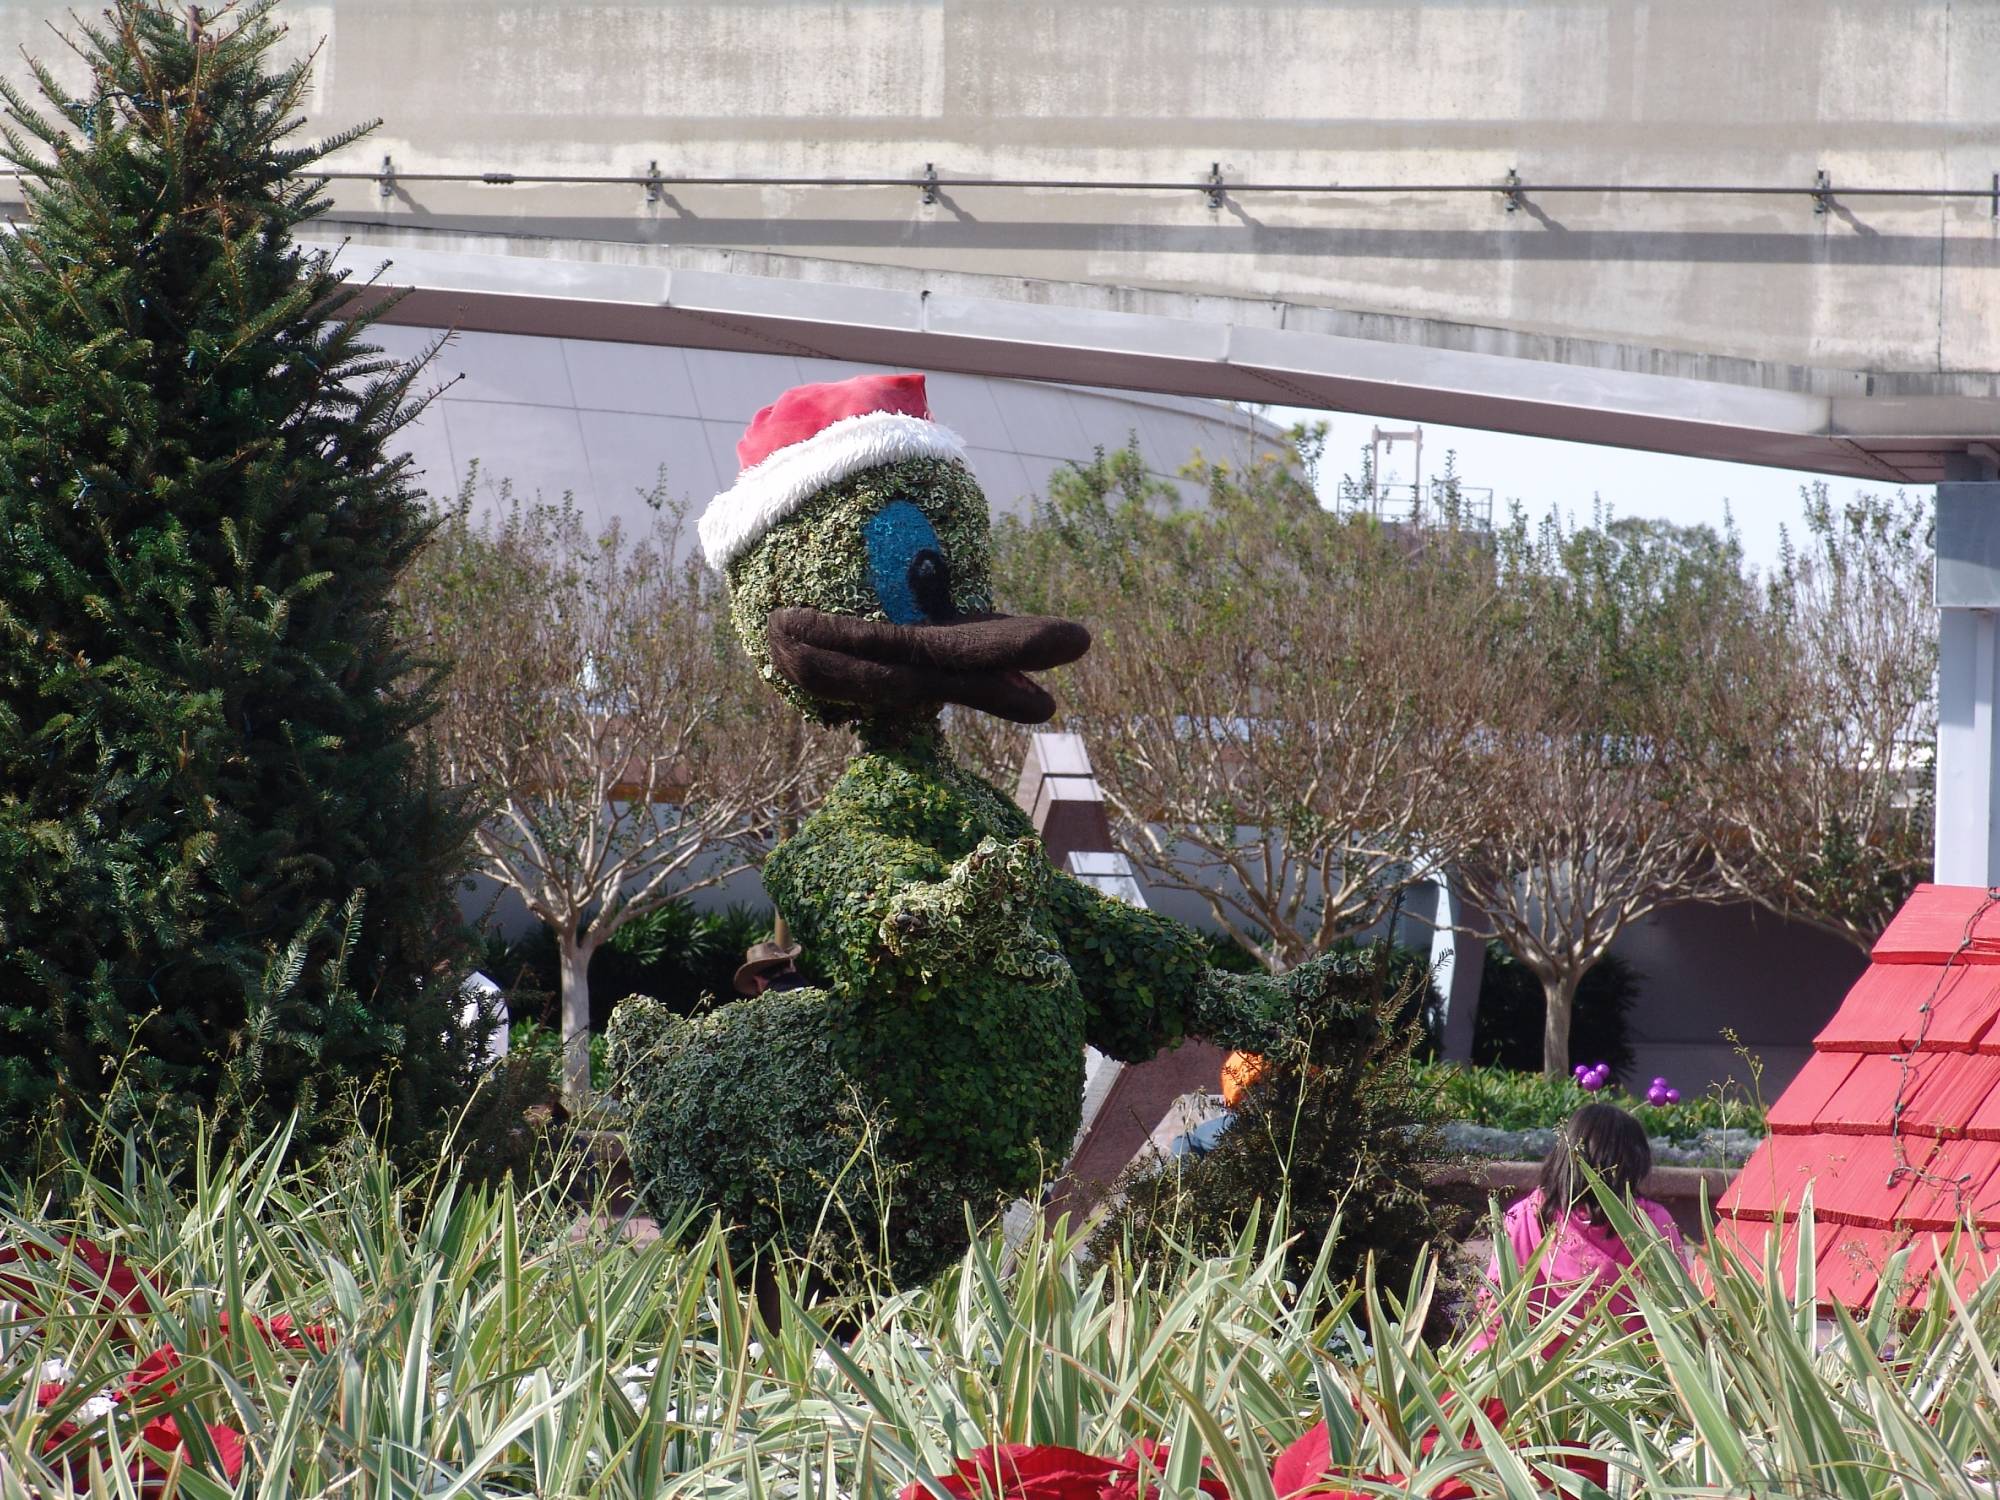 Epcot - Christmas topiary figures